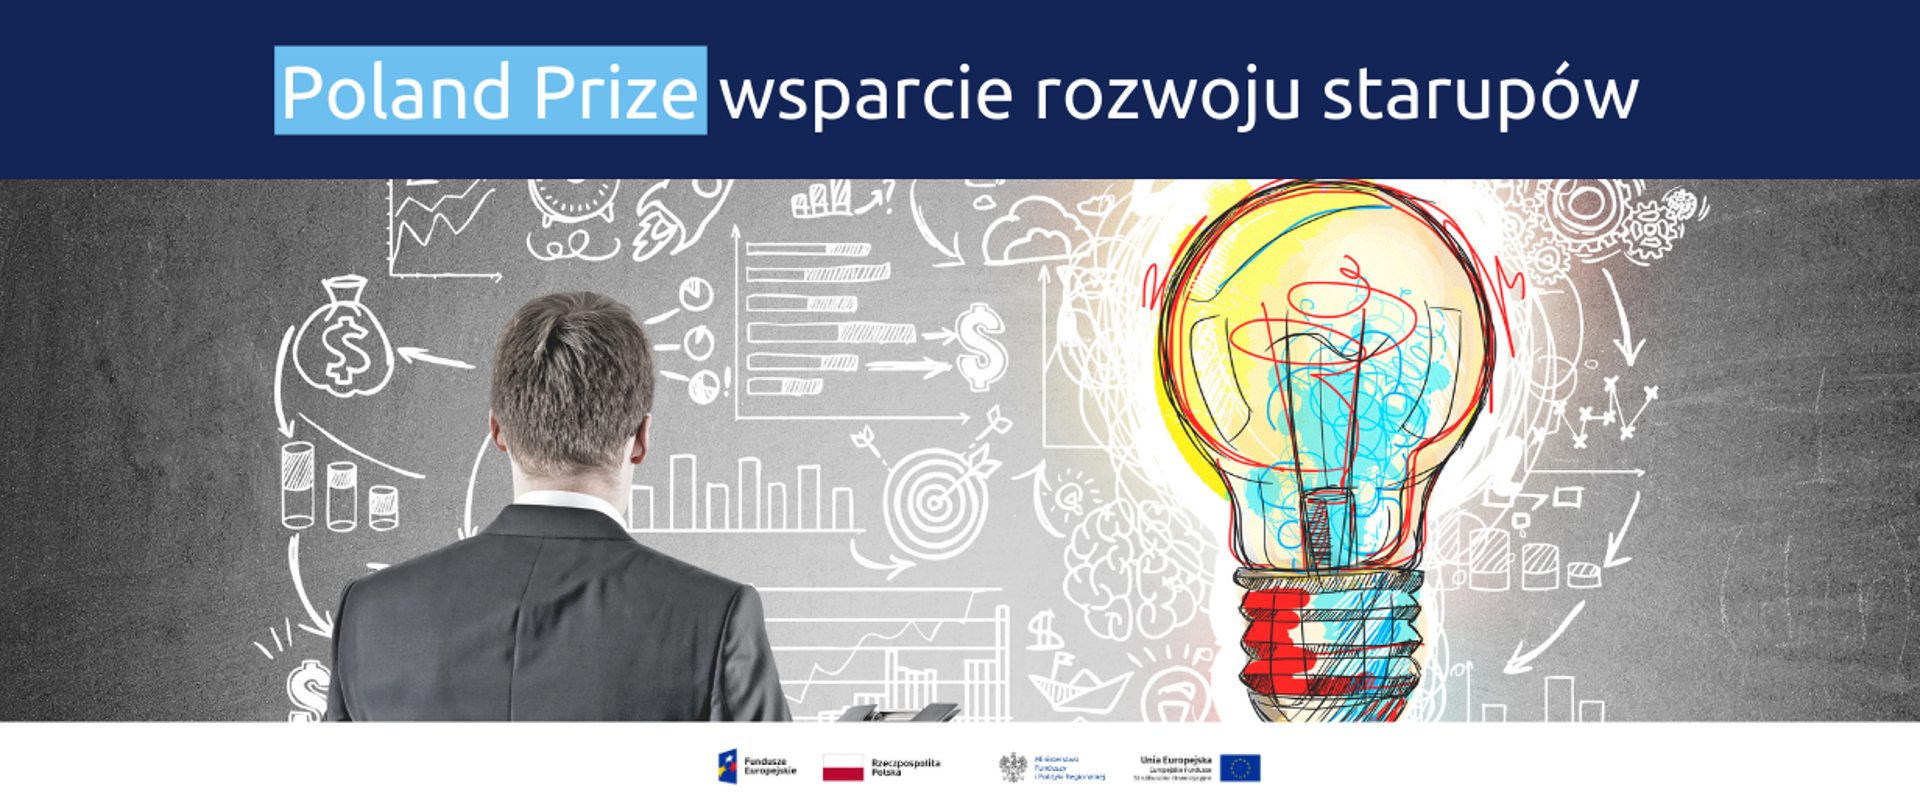 Na grafice u góry napis: "Poland Prize wsparcie rozwoju startupów". Poniżej ilustracja symbolizująca inspiracje.